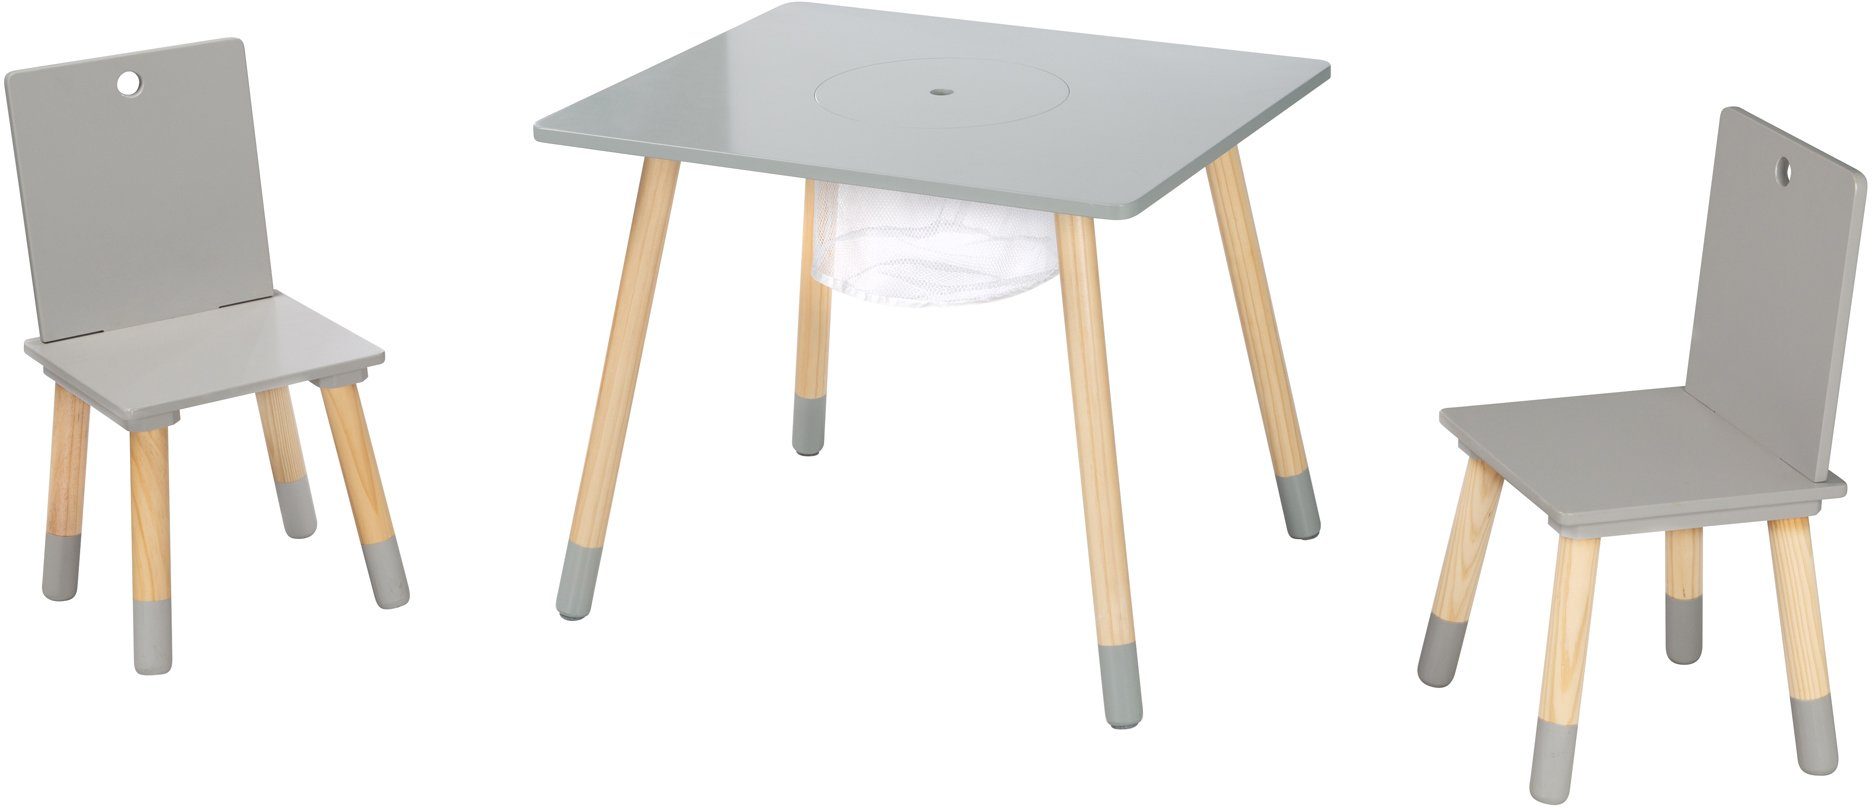 roba® Kindersitzgruppe Sitzgruppe mit Aufbewahrungsnetz, aus grau, Holz